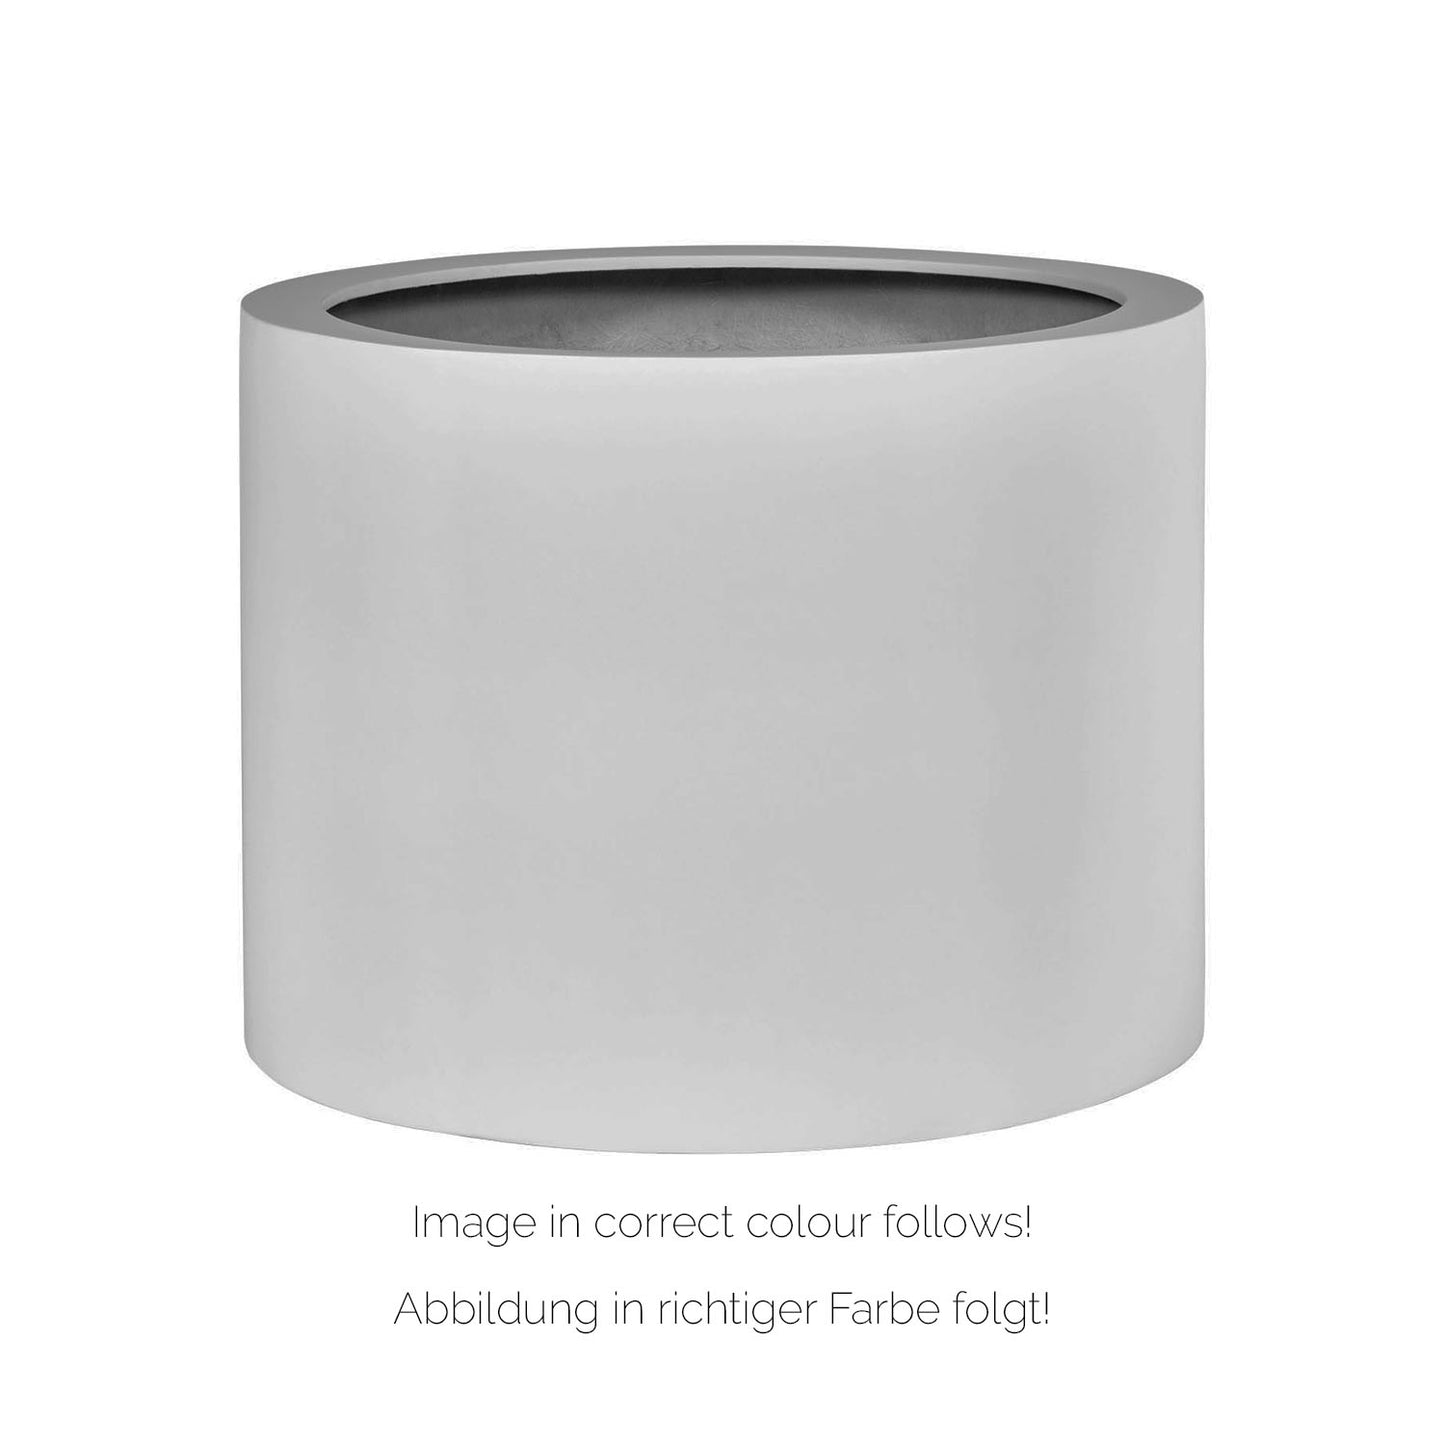 New Tribeca Shape Pflanzgefäß zylindrisch mit Rollenaufnahme, Ø 60 cm, Höhe 40 cm, granit olivgrau